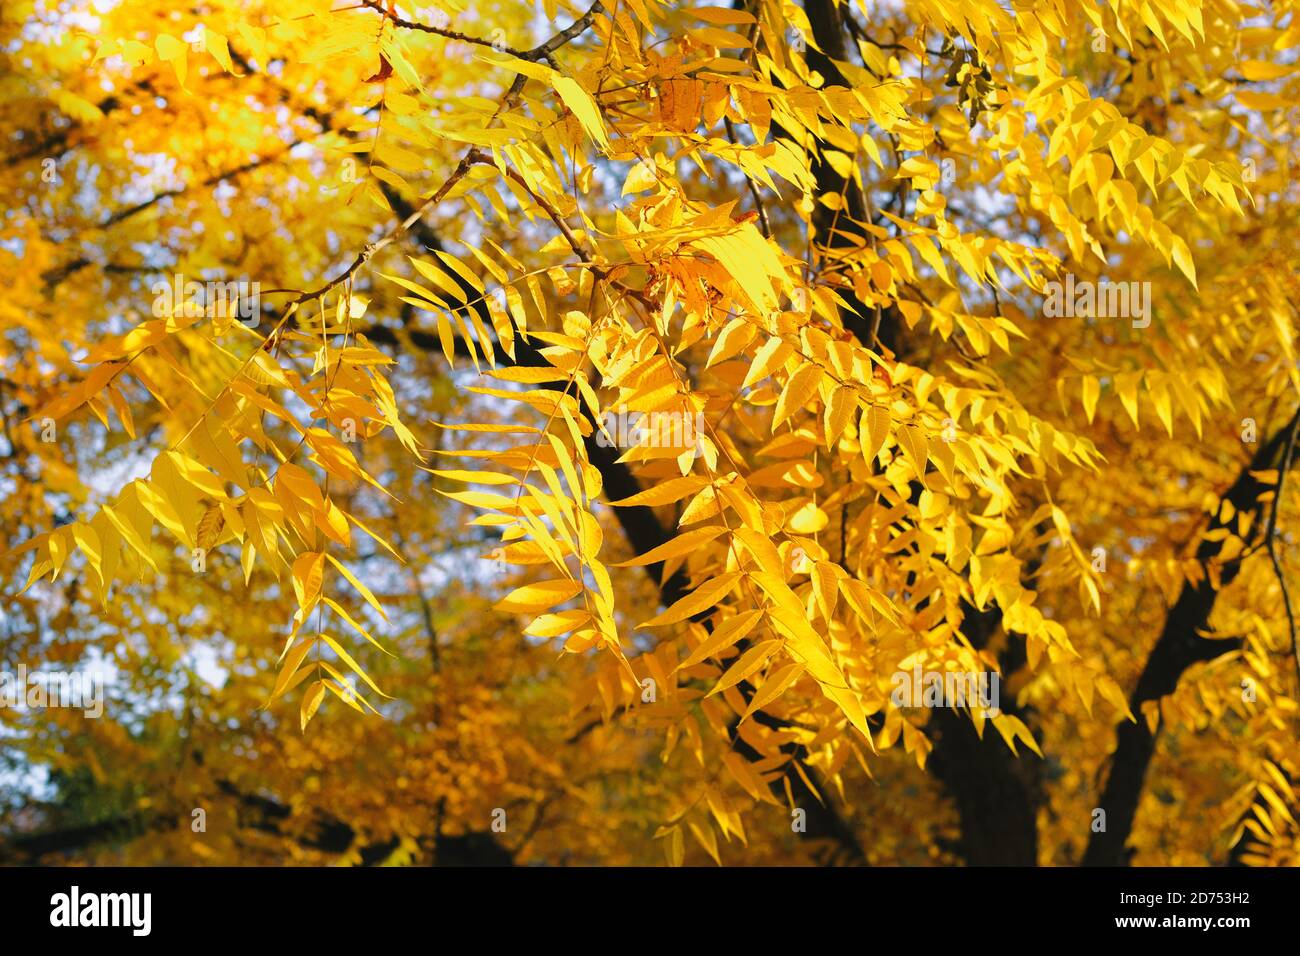 Golden automne concept. Image d'arrière-plan des feuilles d'automne parfaite pour une utilisation saisonnière. Jour ensoleillé, temps chaud. Banque D'Images